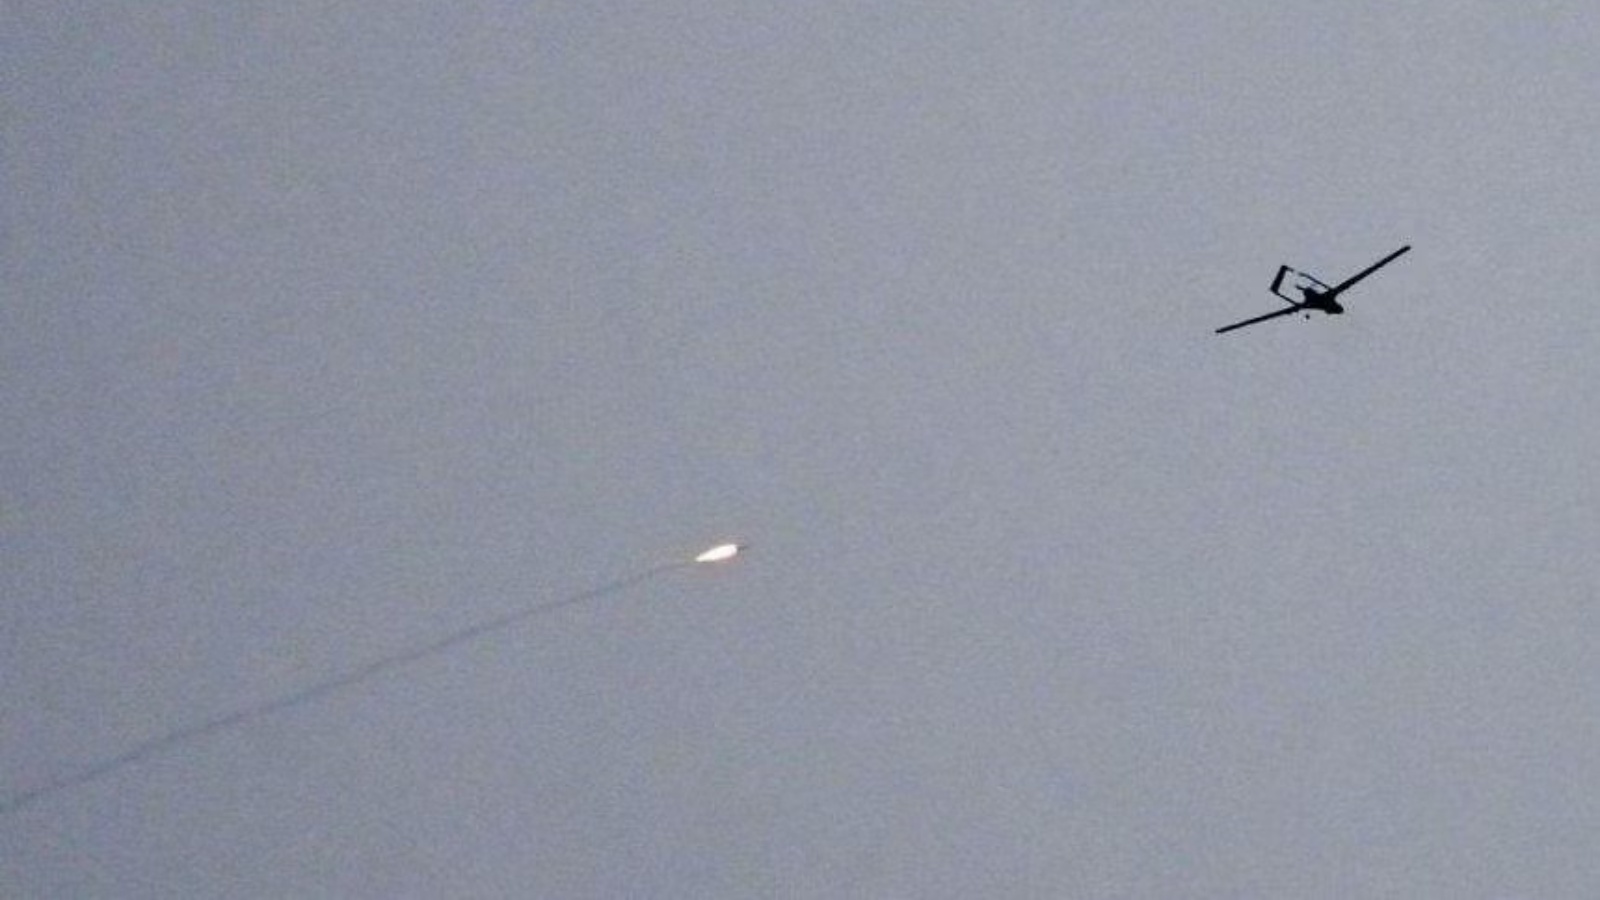 دفاع جوي أوكراني يطلق النار على طائرة بدون طيار فوق كييف في 4 مايو